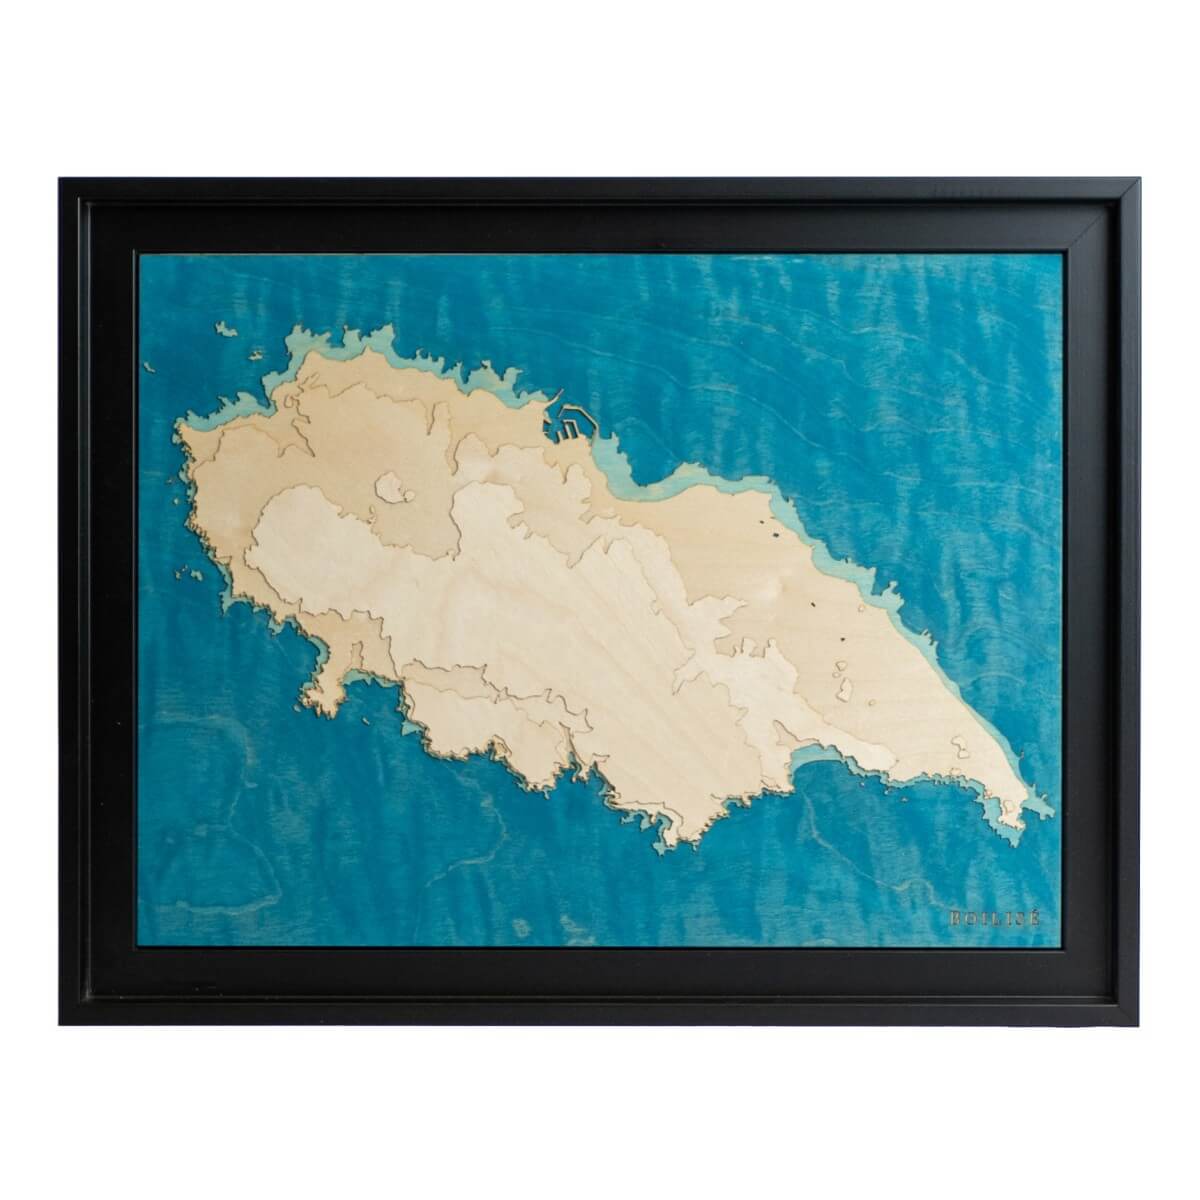 L'île d'Yeu dans une carte en bois et en relief